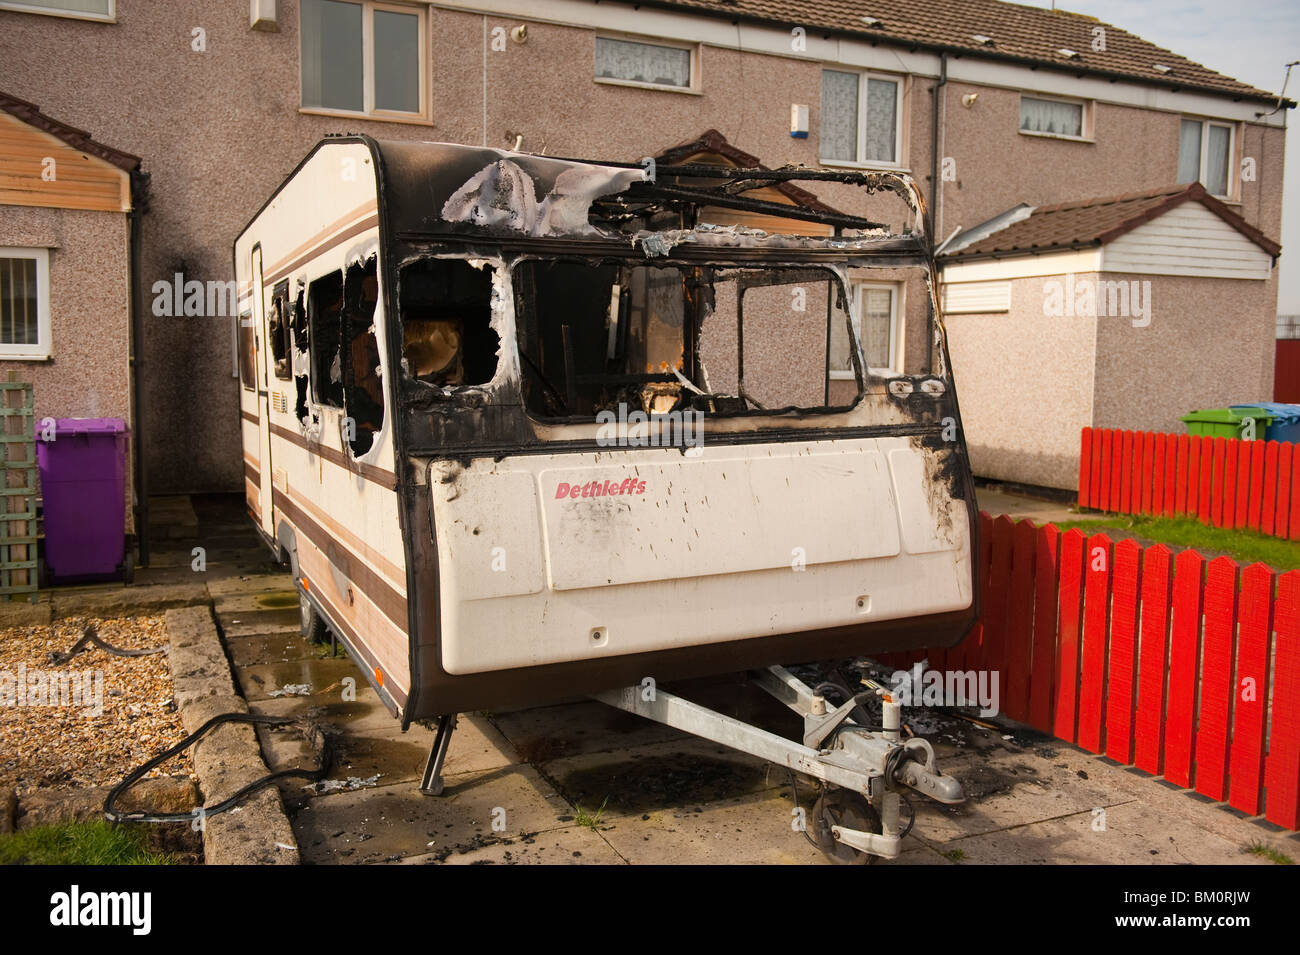 Dethleffs Wohnwagen nach Brandstiftung Feuer ausgebrannt Stockfoto